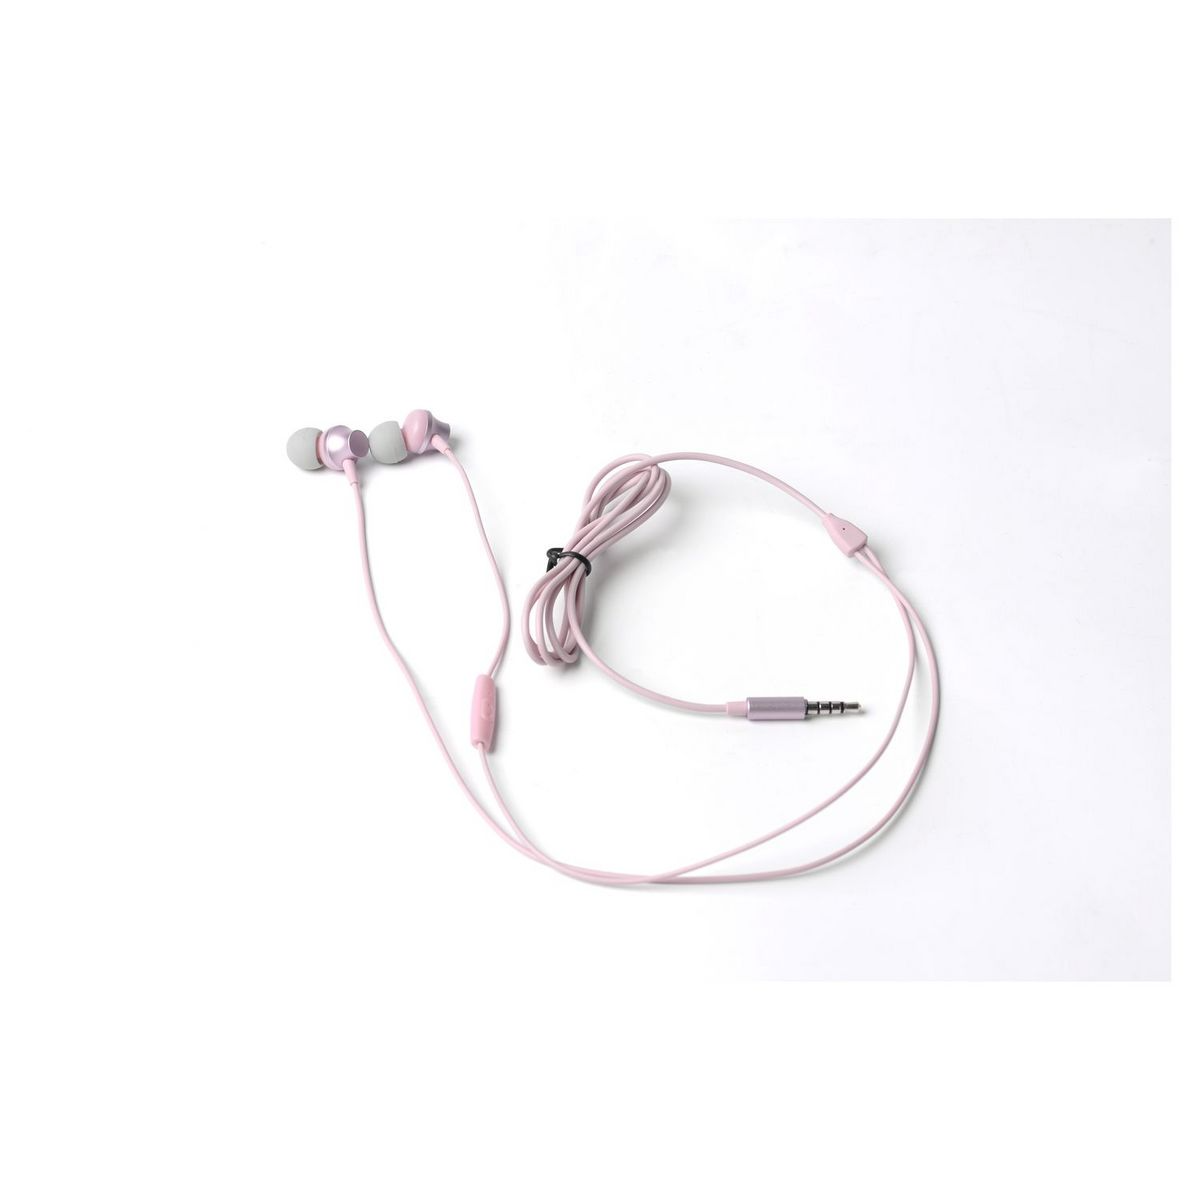 Qilive - Słuchawki z mikrofonem Q1335 różowe